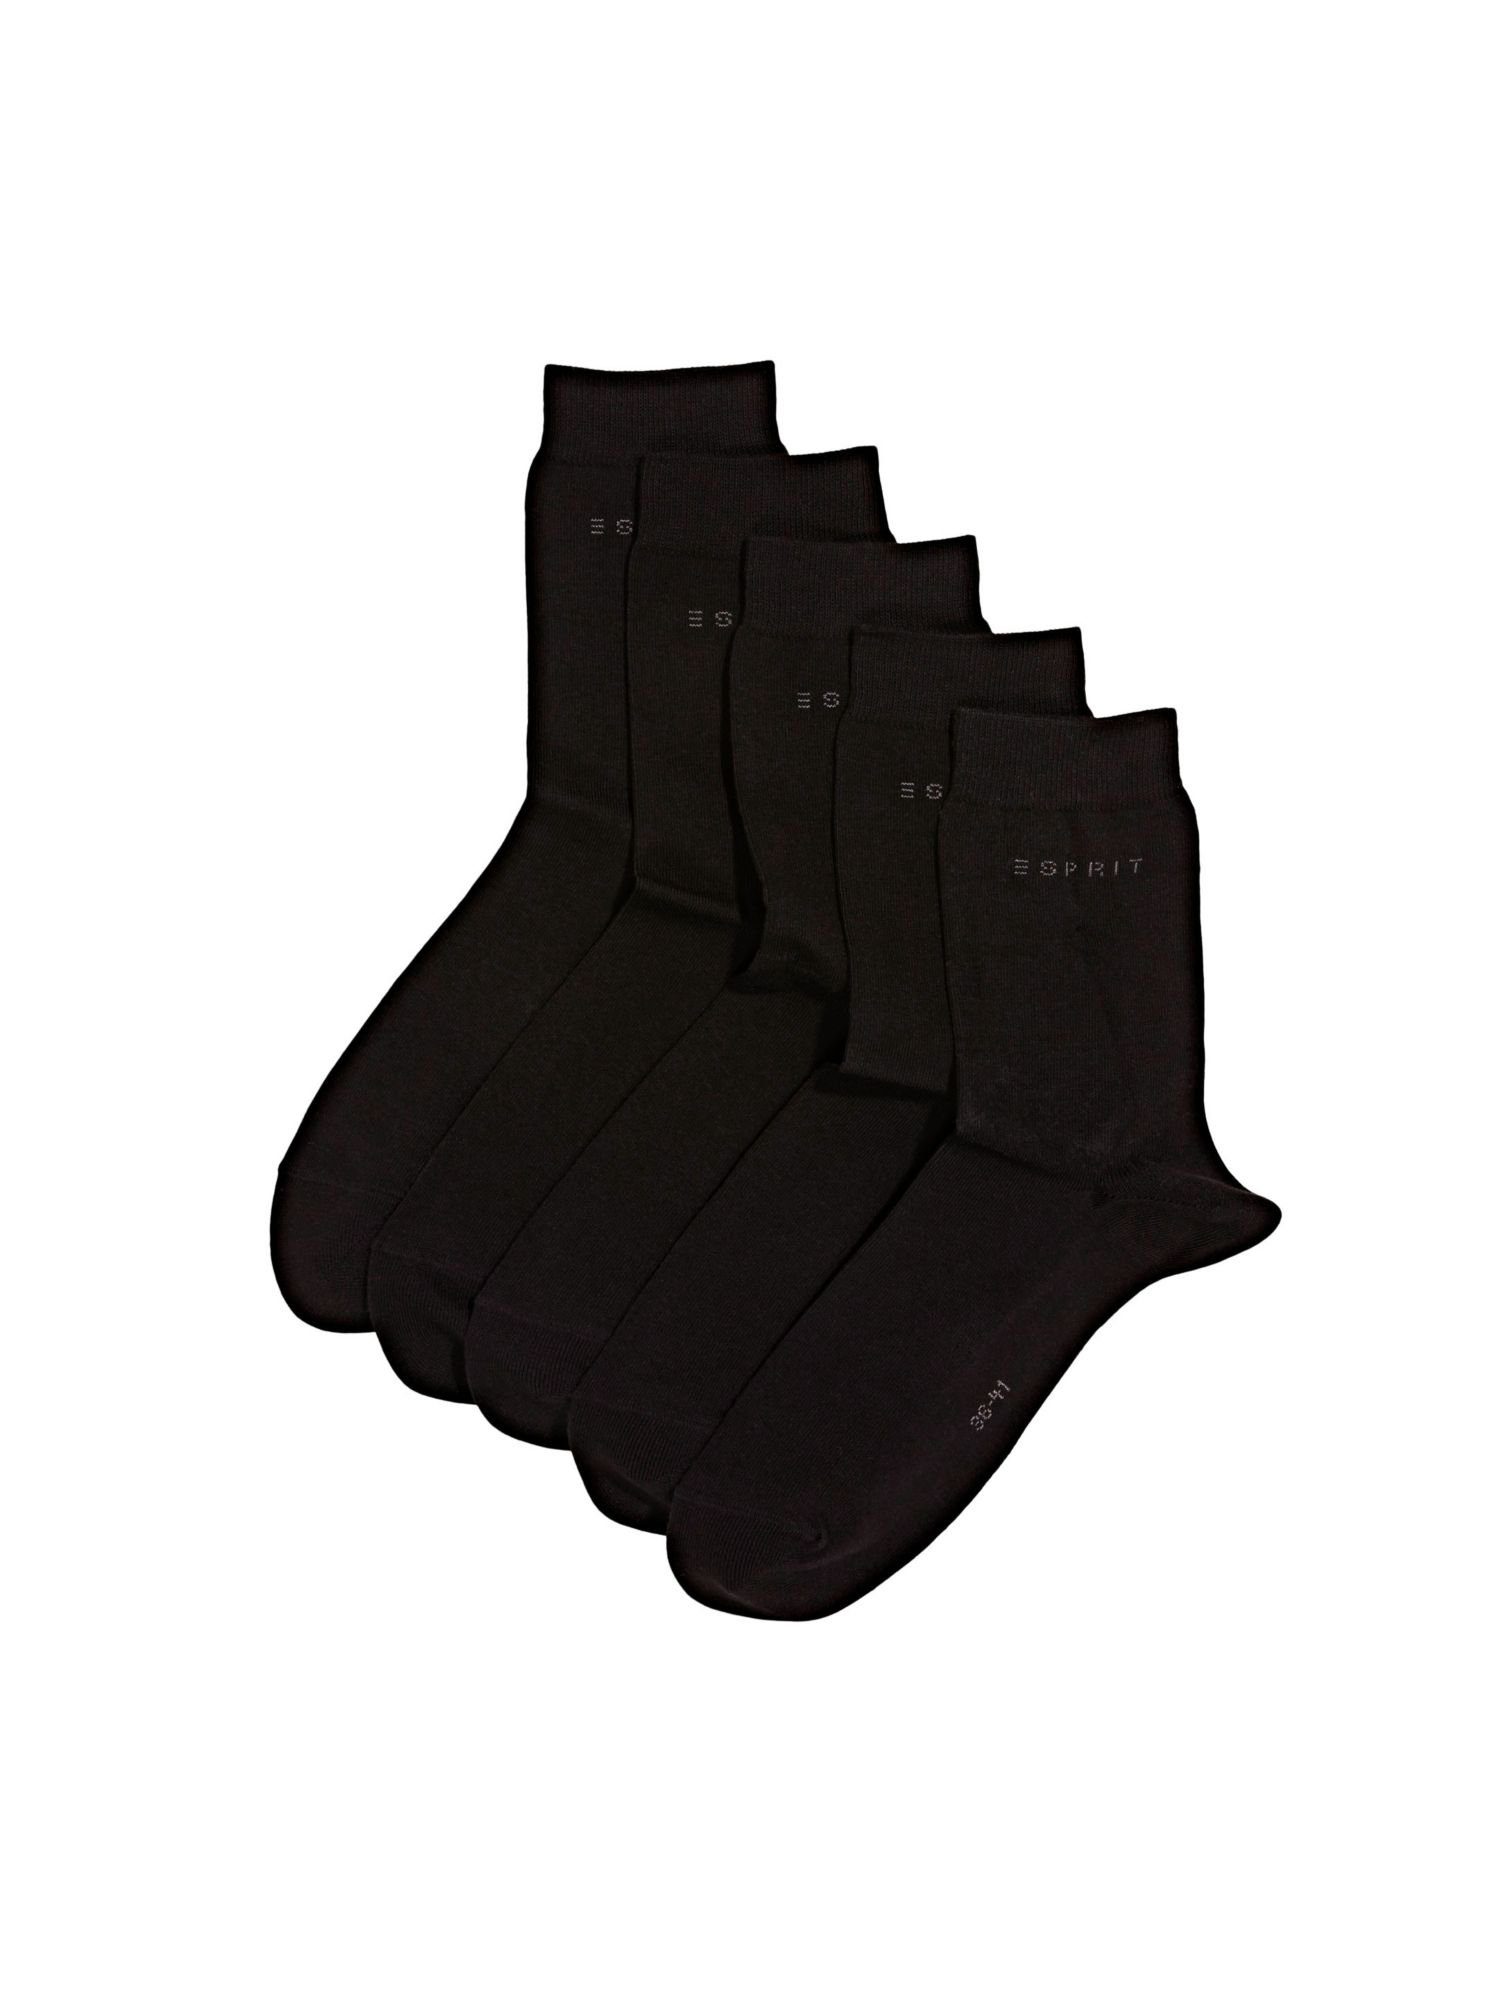 Wäsche/Bademode Socken Esprit Socken 5er-Pack unifarbene Socken, Bio-Baumwolle